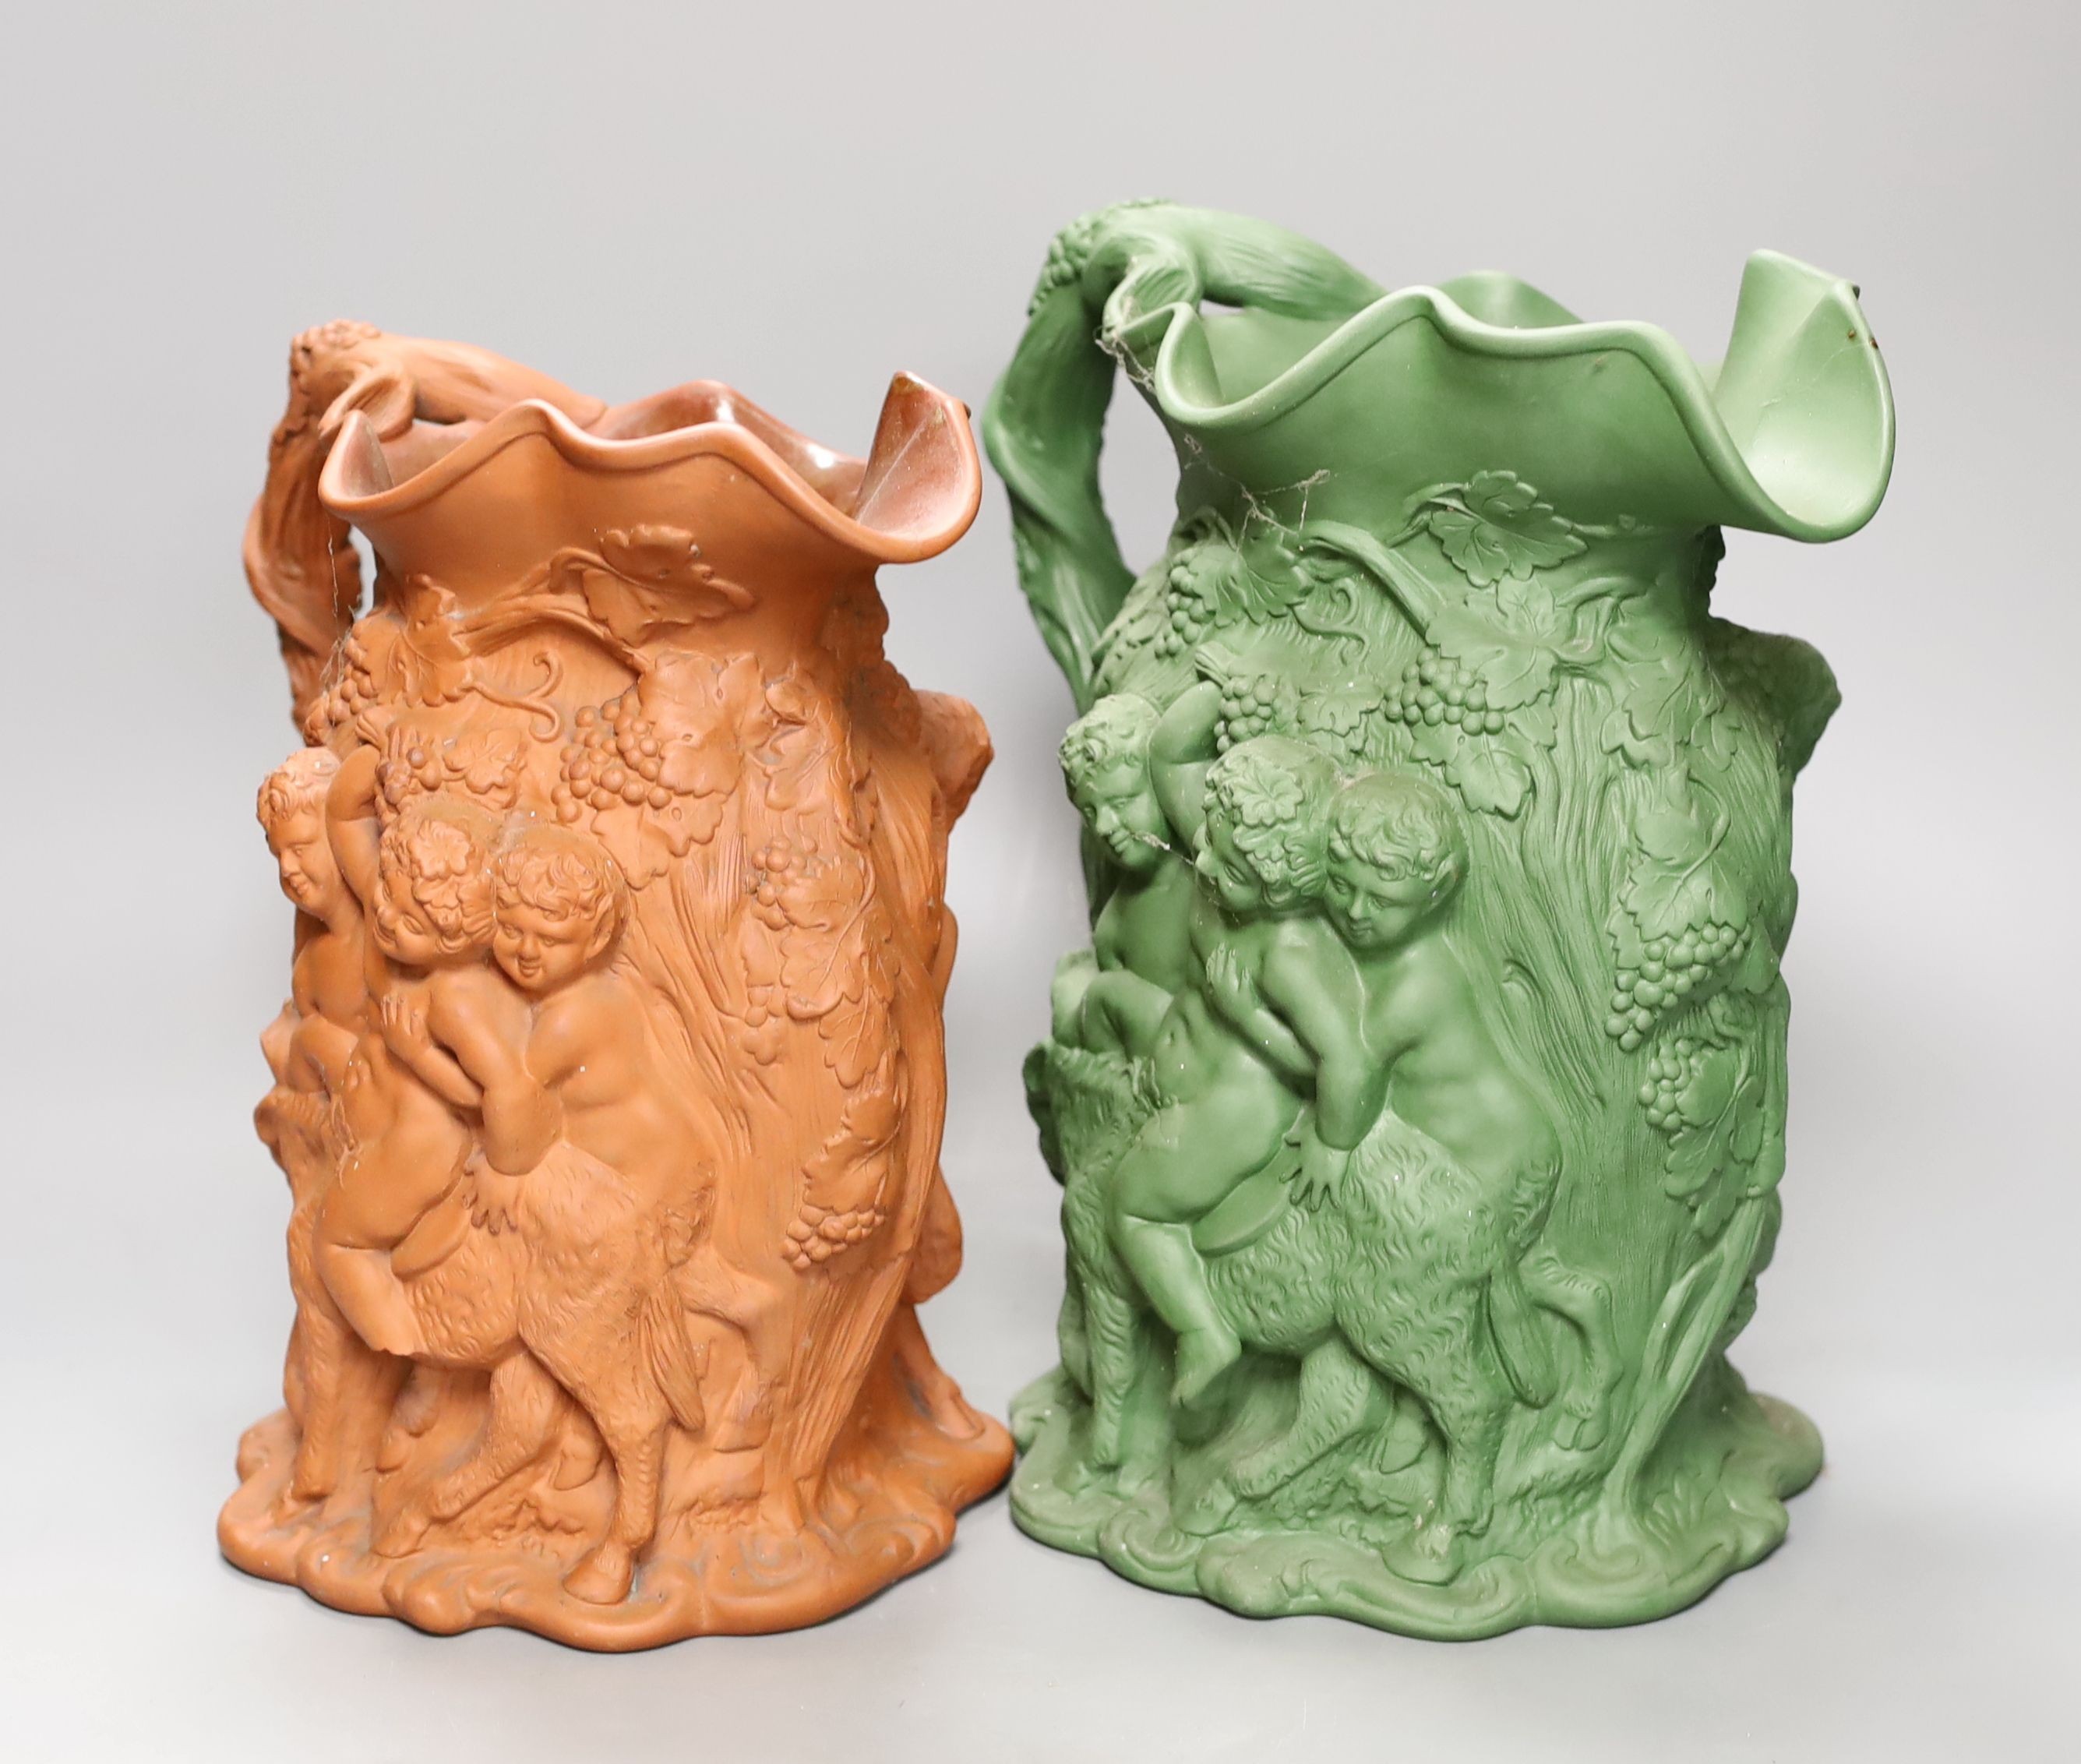 Two early 19th century terracotta Bacchanalian jugs, one green glazed 28cm